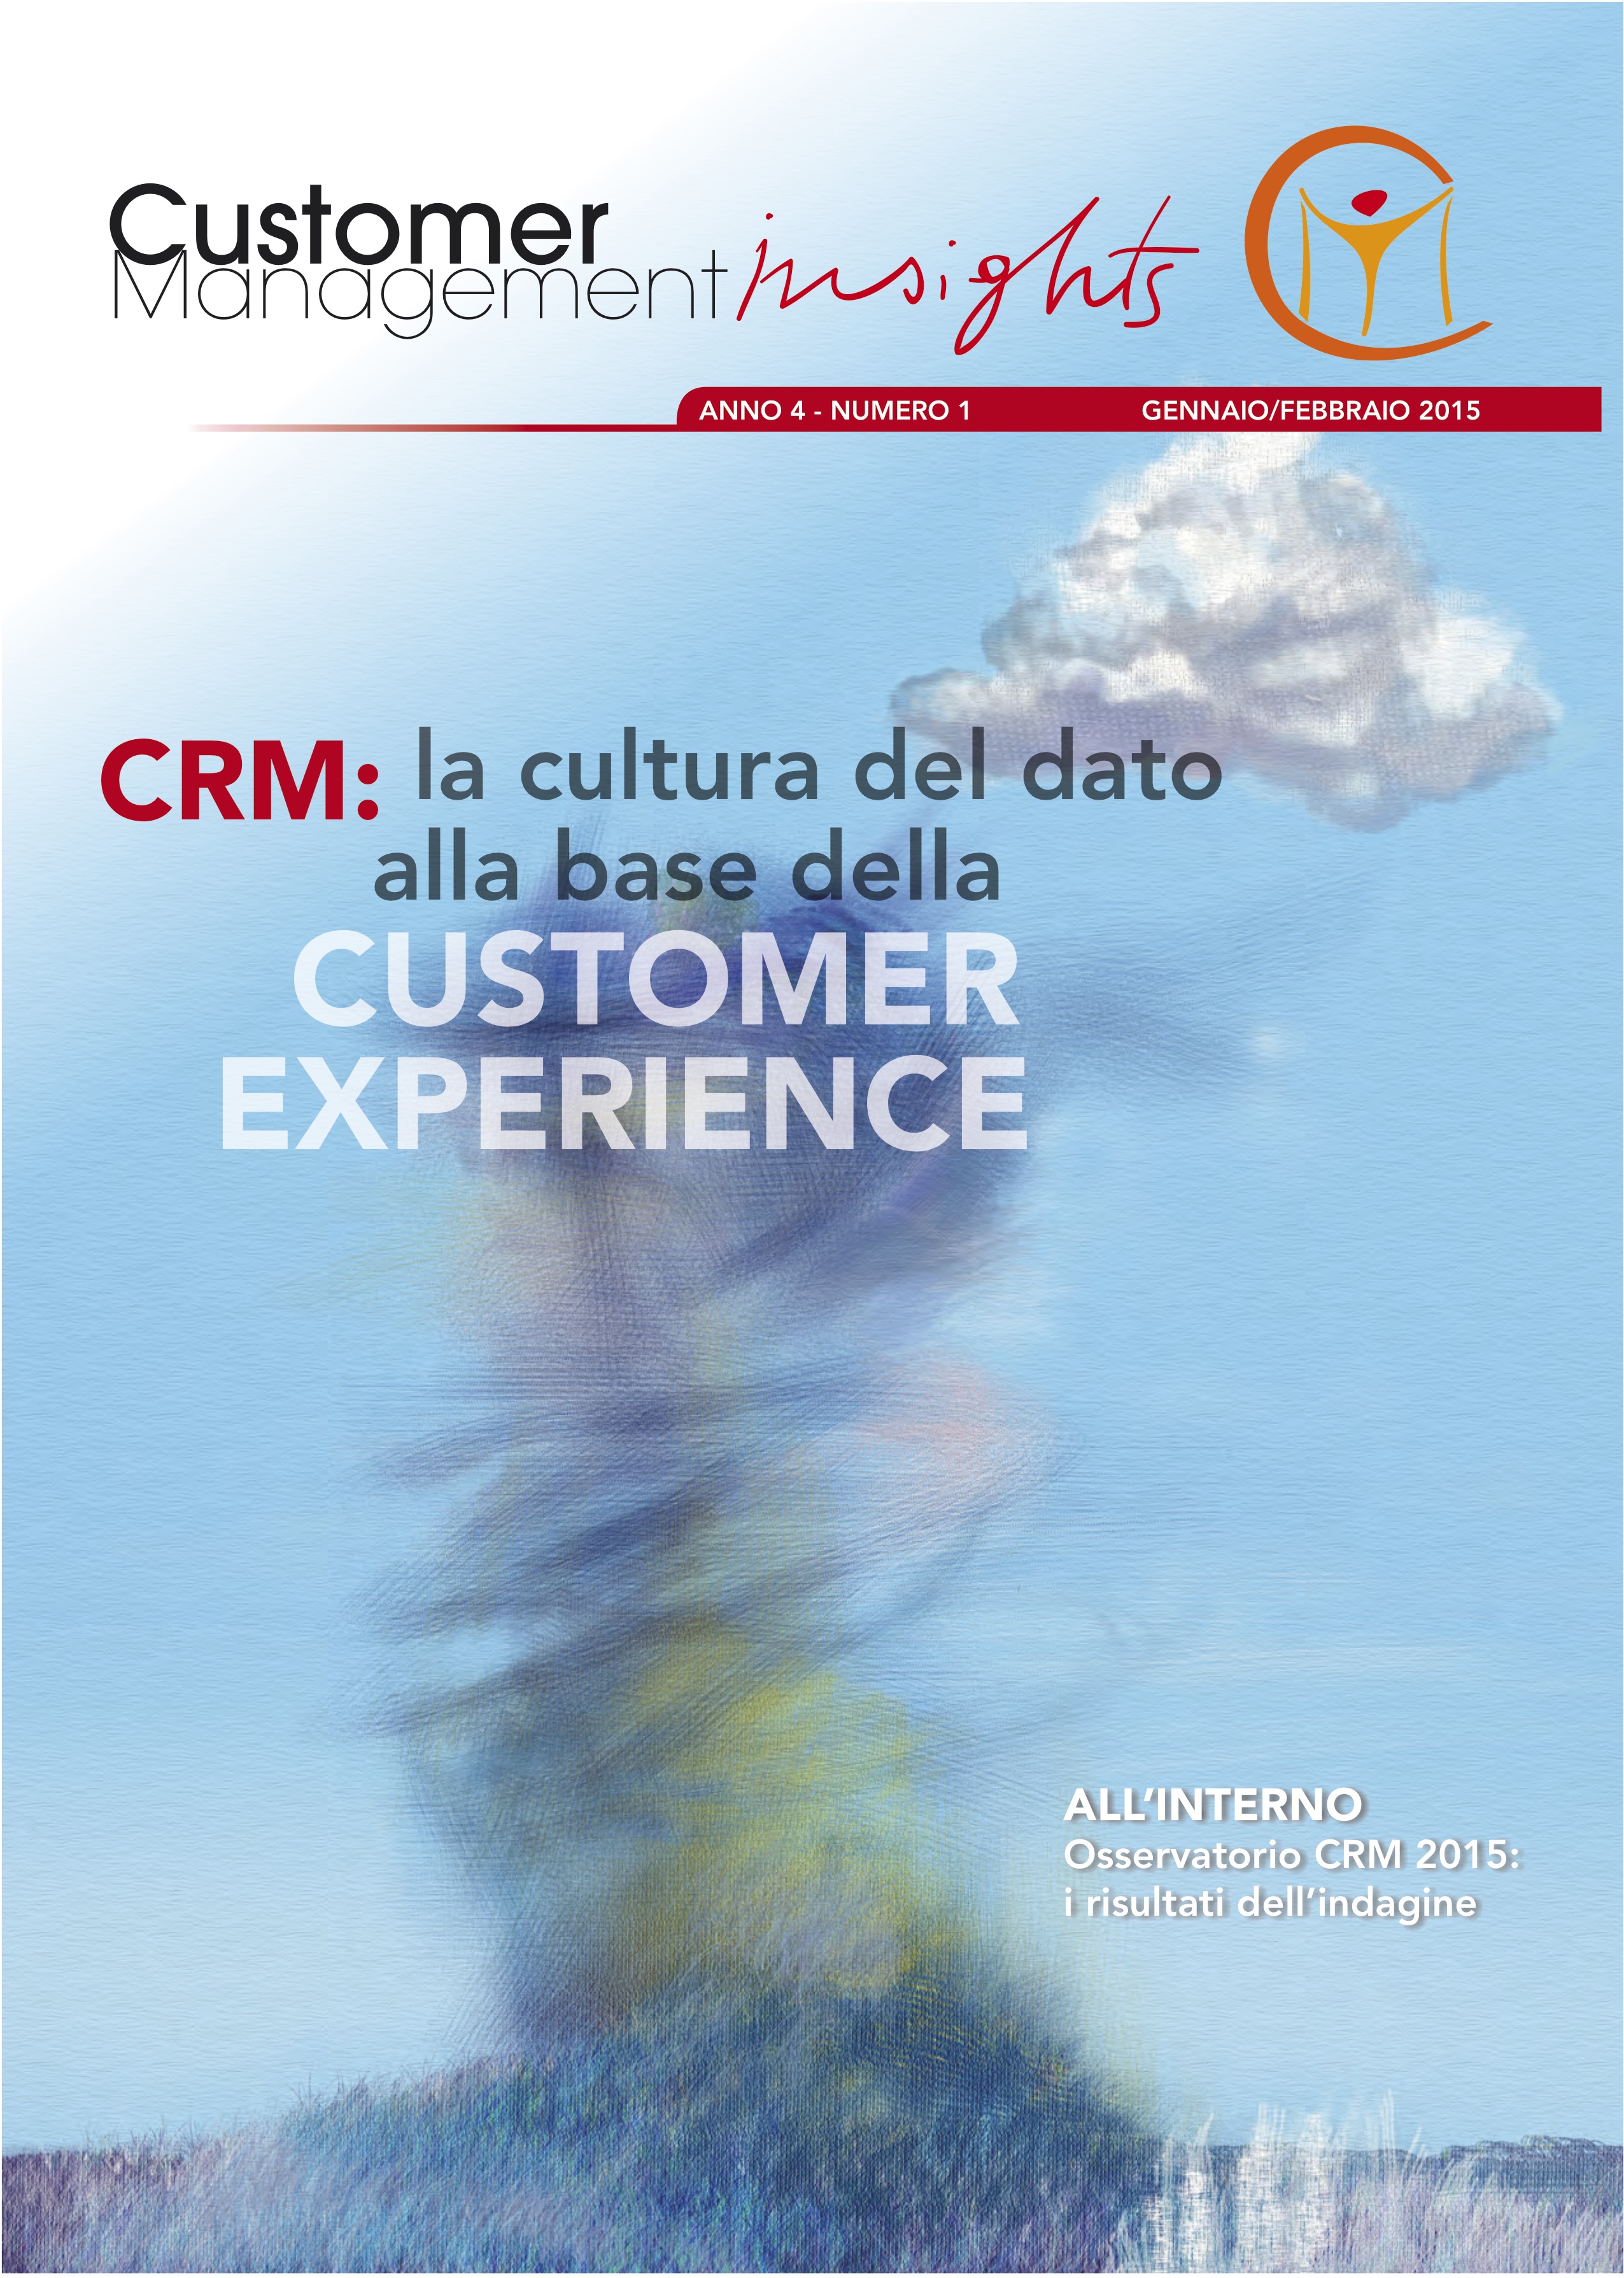 CRM: la cultura del dato alla base della Customer Experience